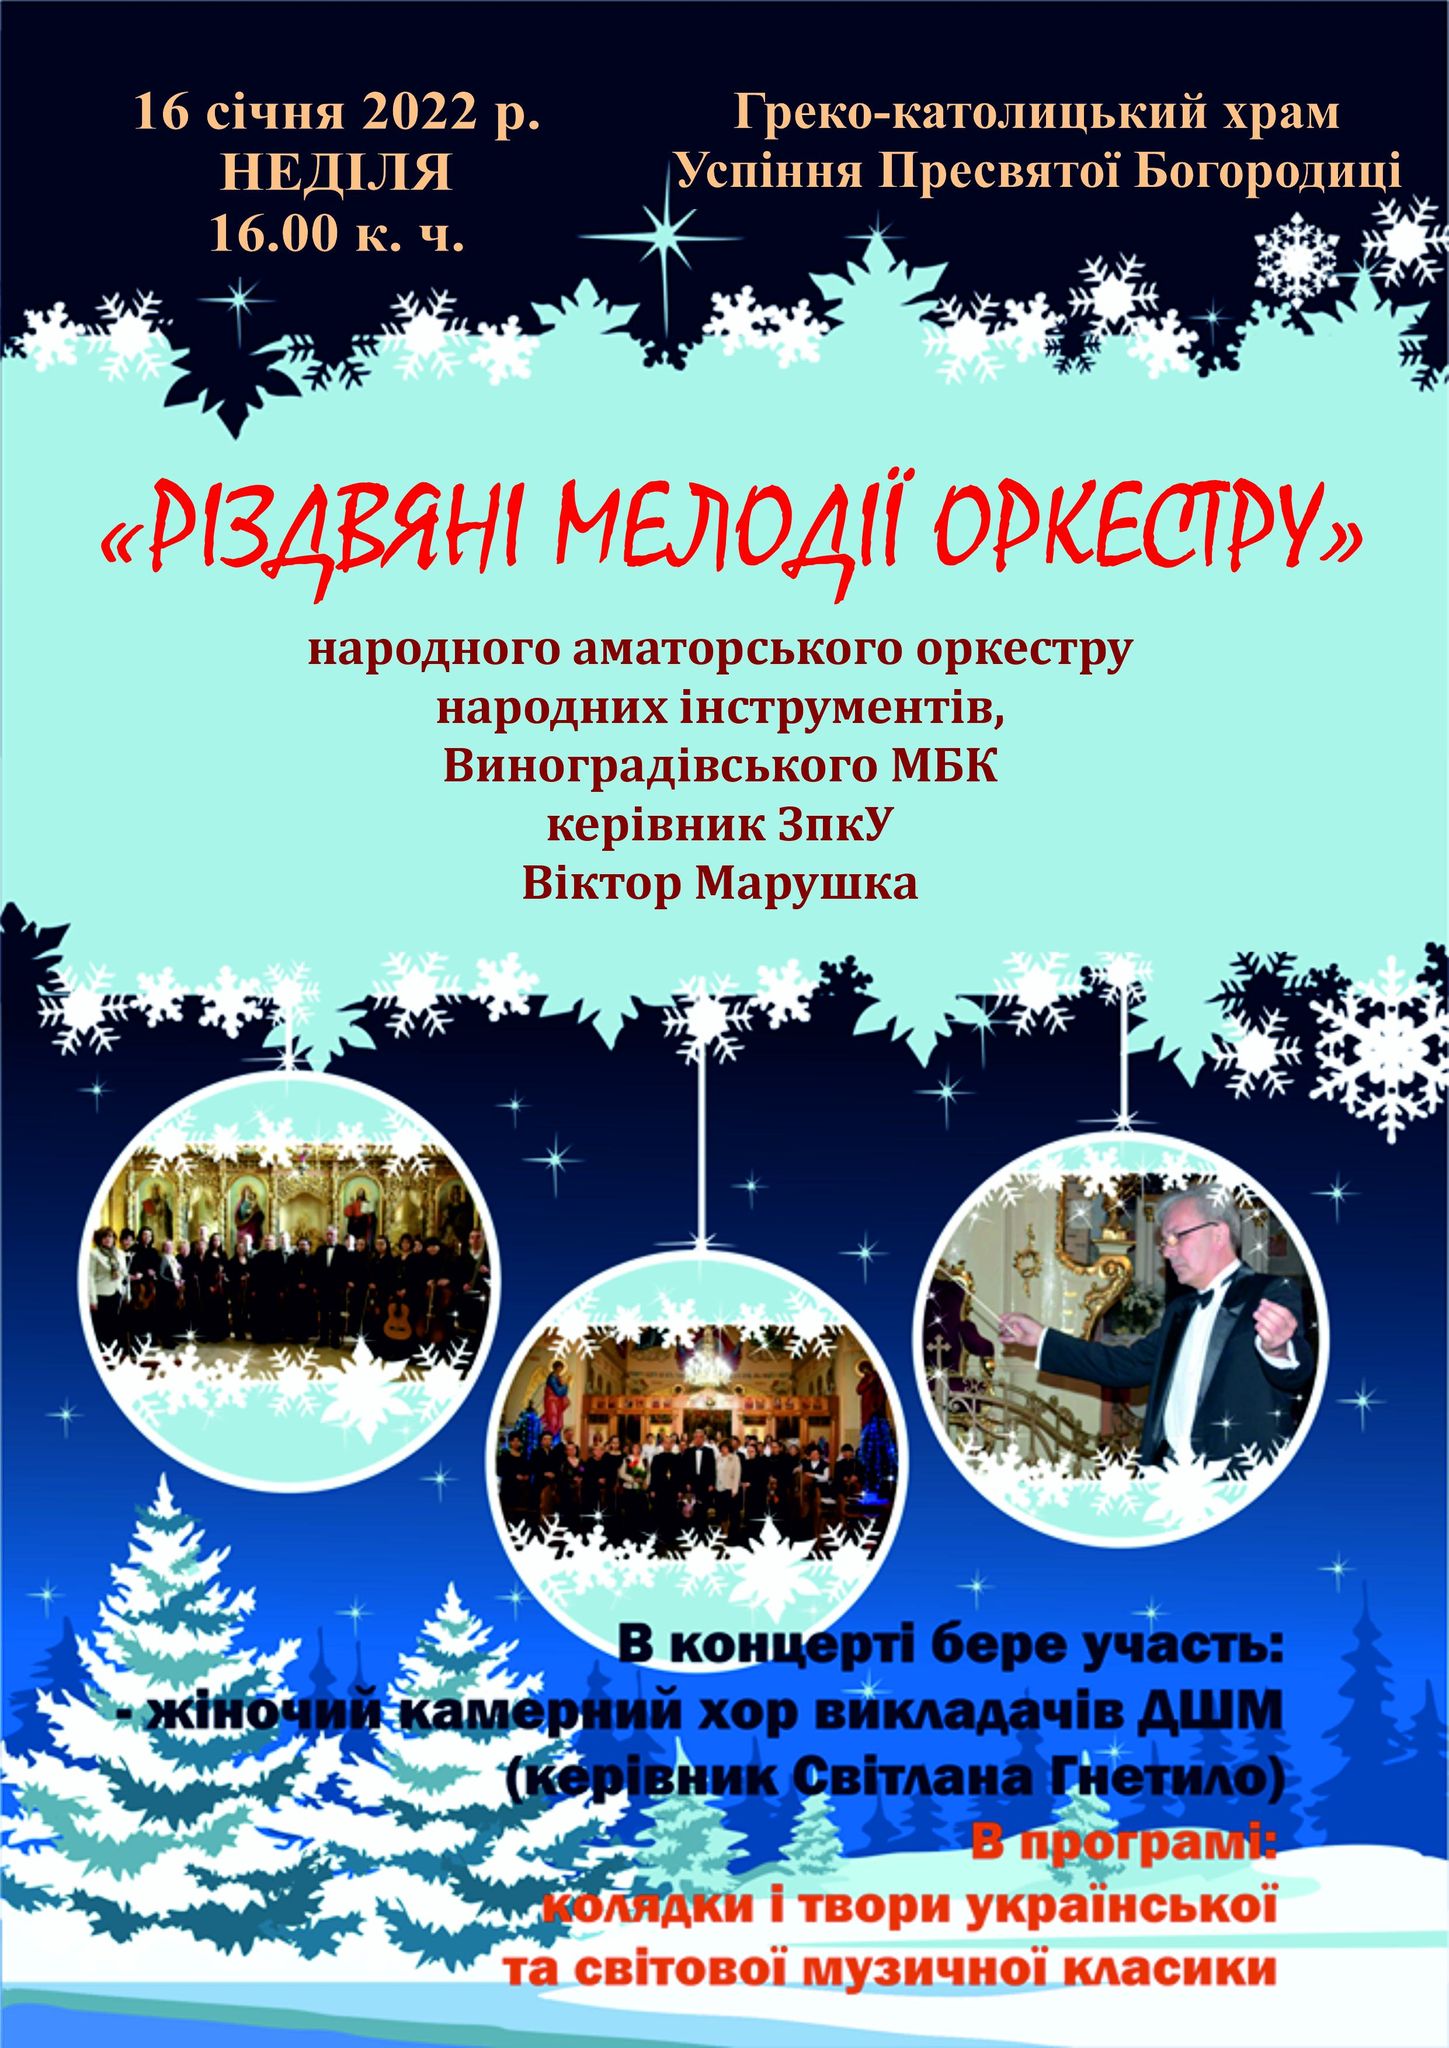 Культурное мероприятие состоится 16 января в греко-католической церкви Успения Блаженной Богродики.